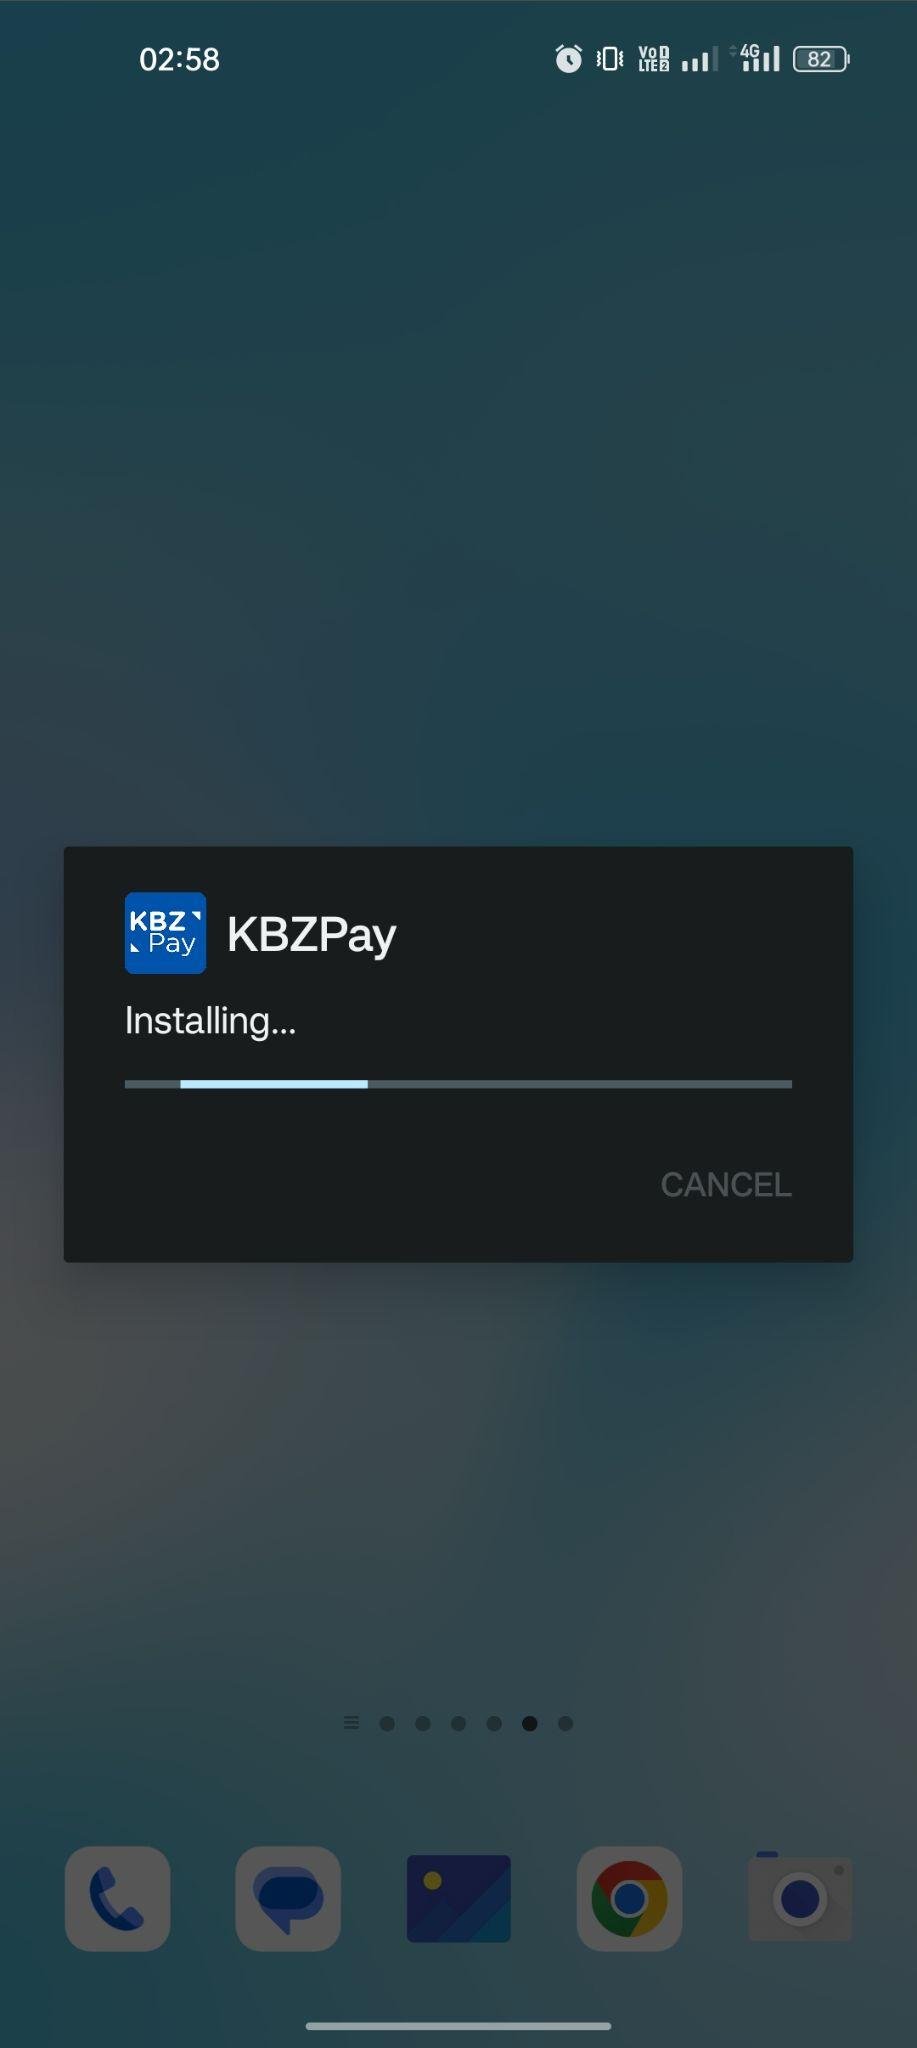 KBZPay apk installing